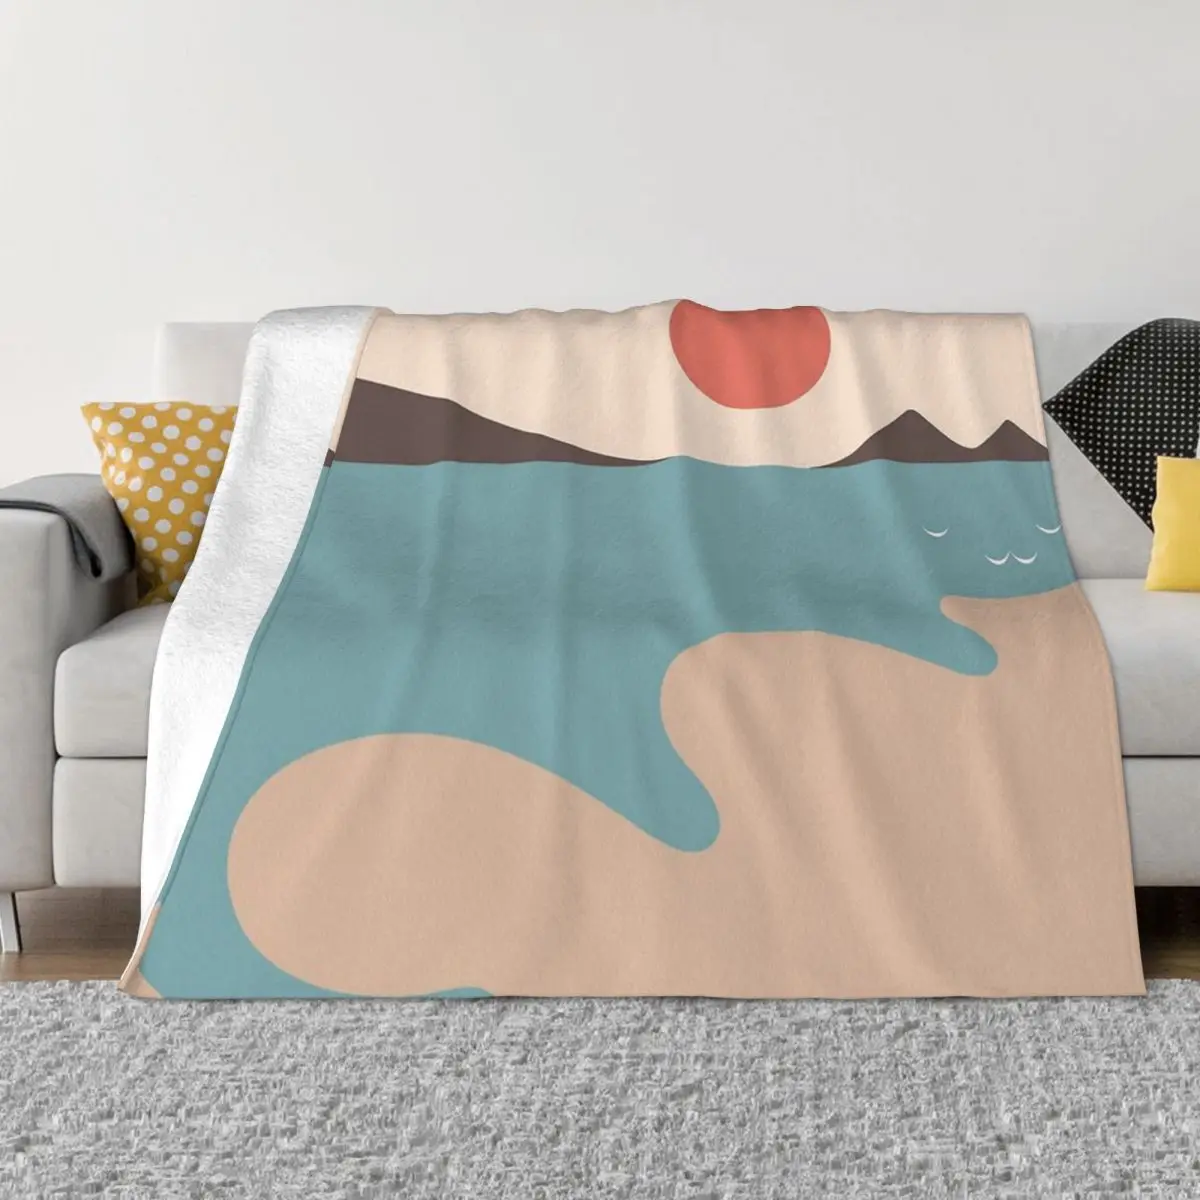 

Фланелевое Одеяло с абстрактным изображением кота, пейзажа, весна-осень, теплое постельное белье для зимы